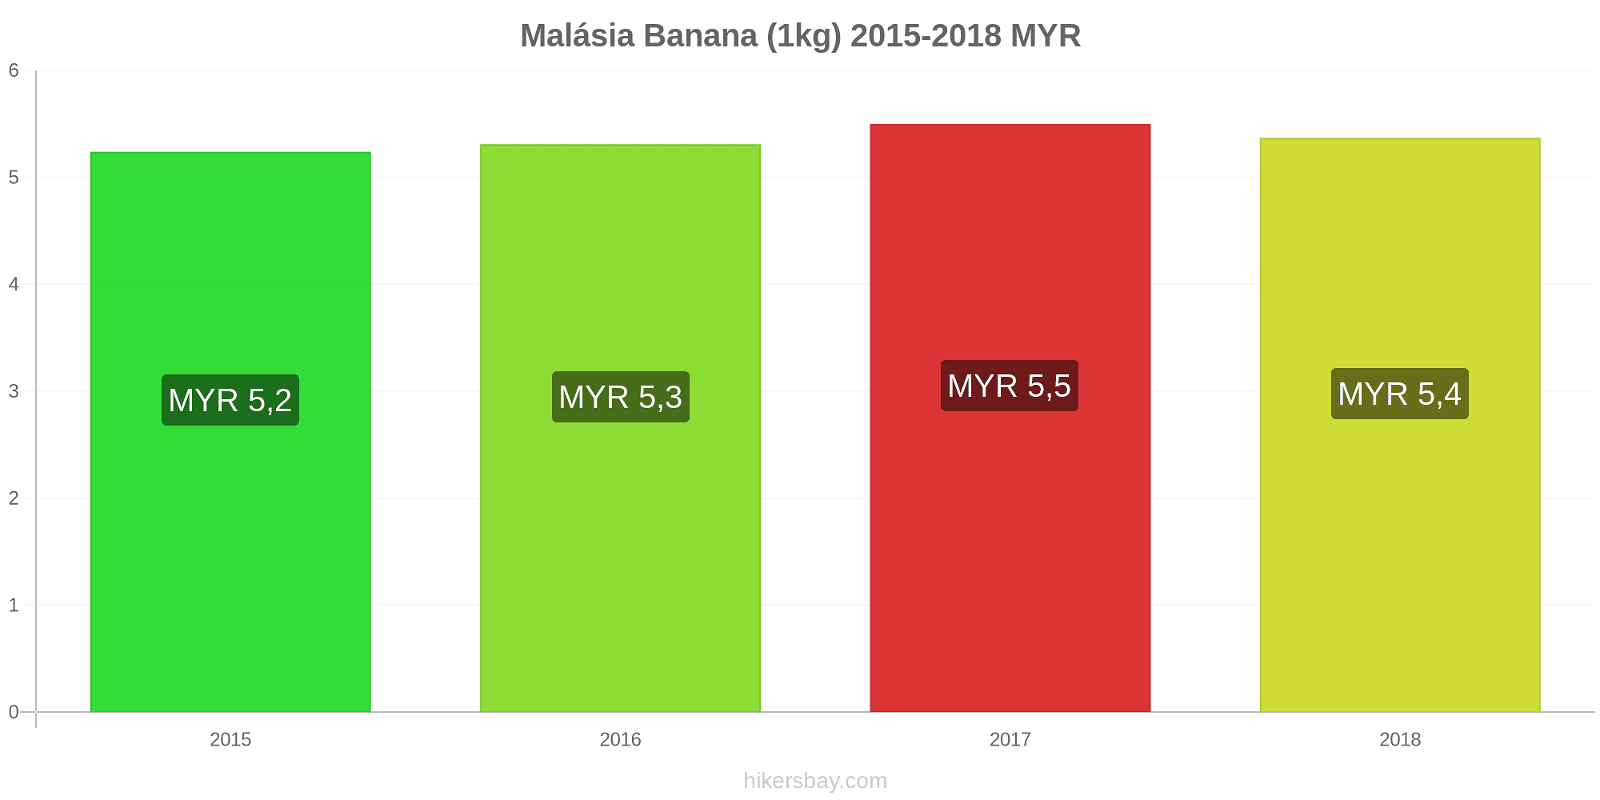 Malásia mudanças de preços Bananas (1kg) hikersbay.com